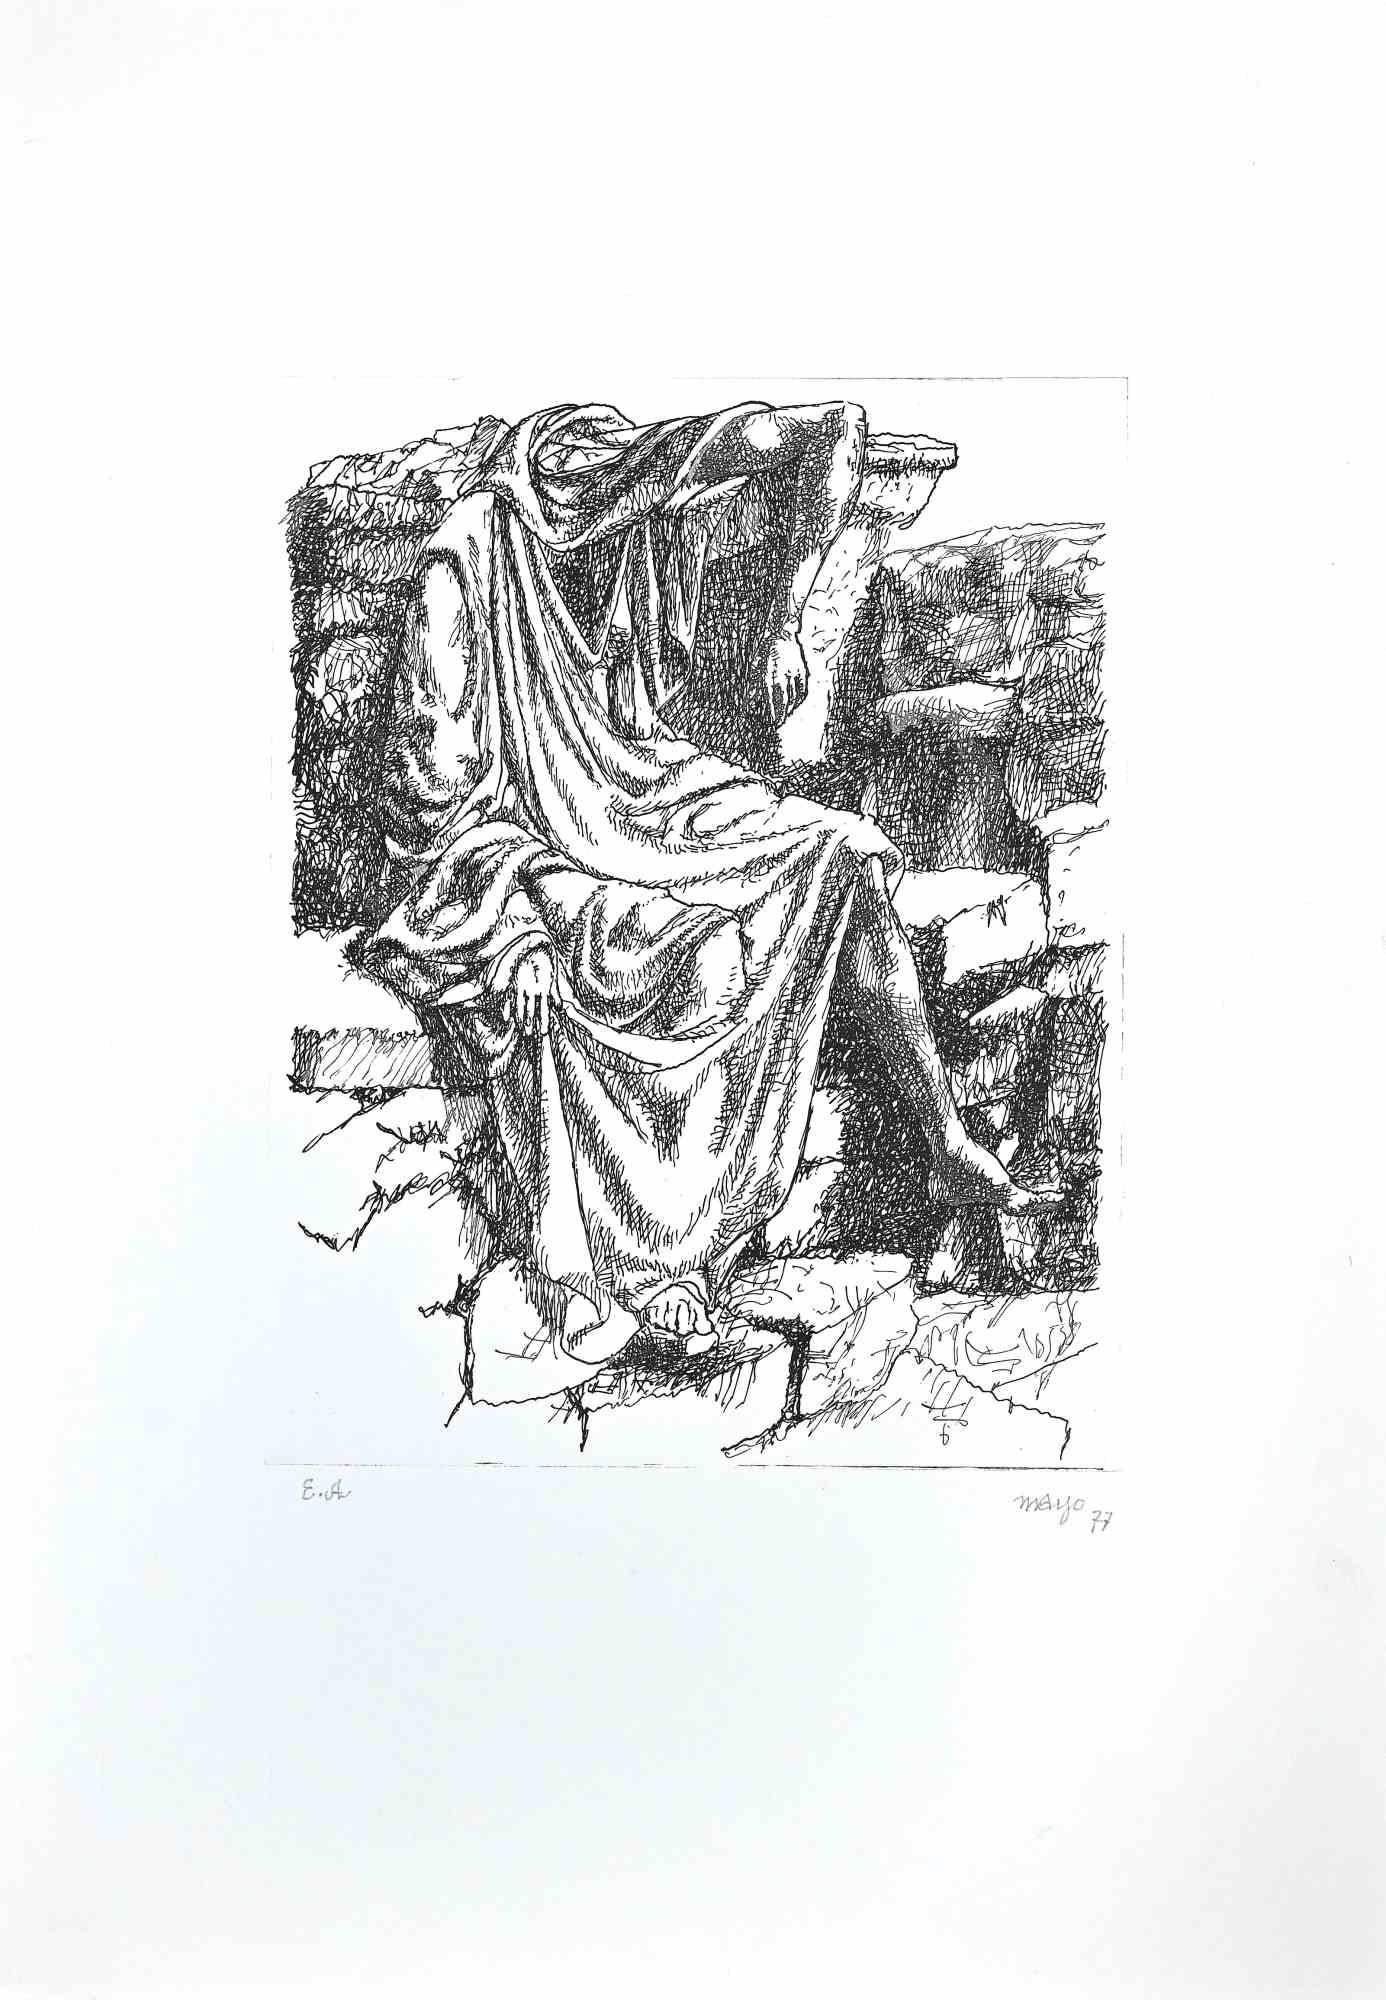 Personnage sans Tête  ist eine Original-Radierung in Schwarz-Weiß auf Papier, die der Künstler Antoine Mayo, Künstlername Malliarakis (1905-1990), 1977 geschaffen hat.

Handsigniert mit Bleistift am unteren rechten Rand,  künstlerexemplar, wie die